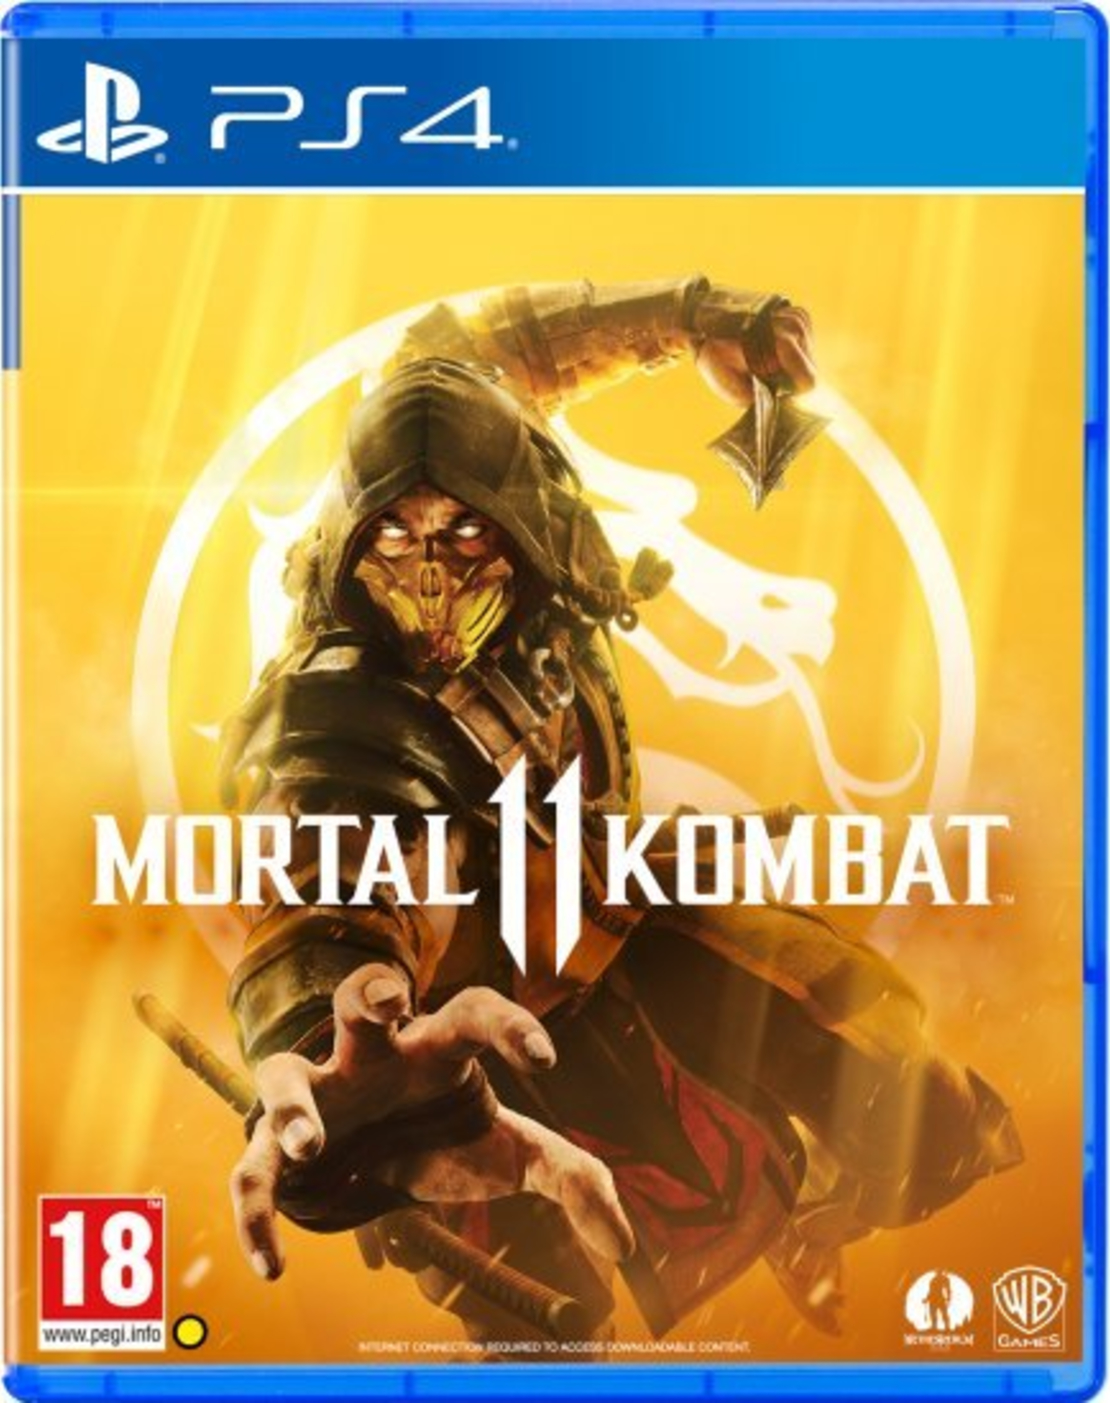 משחק Mortal Kombat 11 ל- PS4